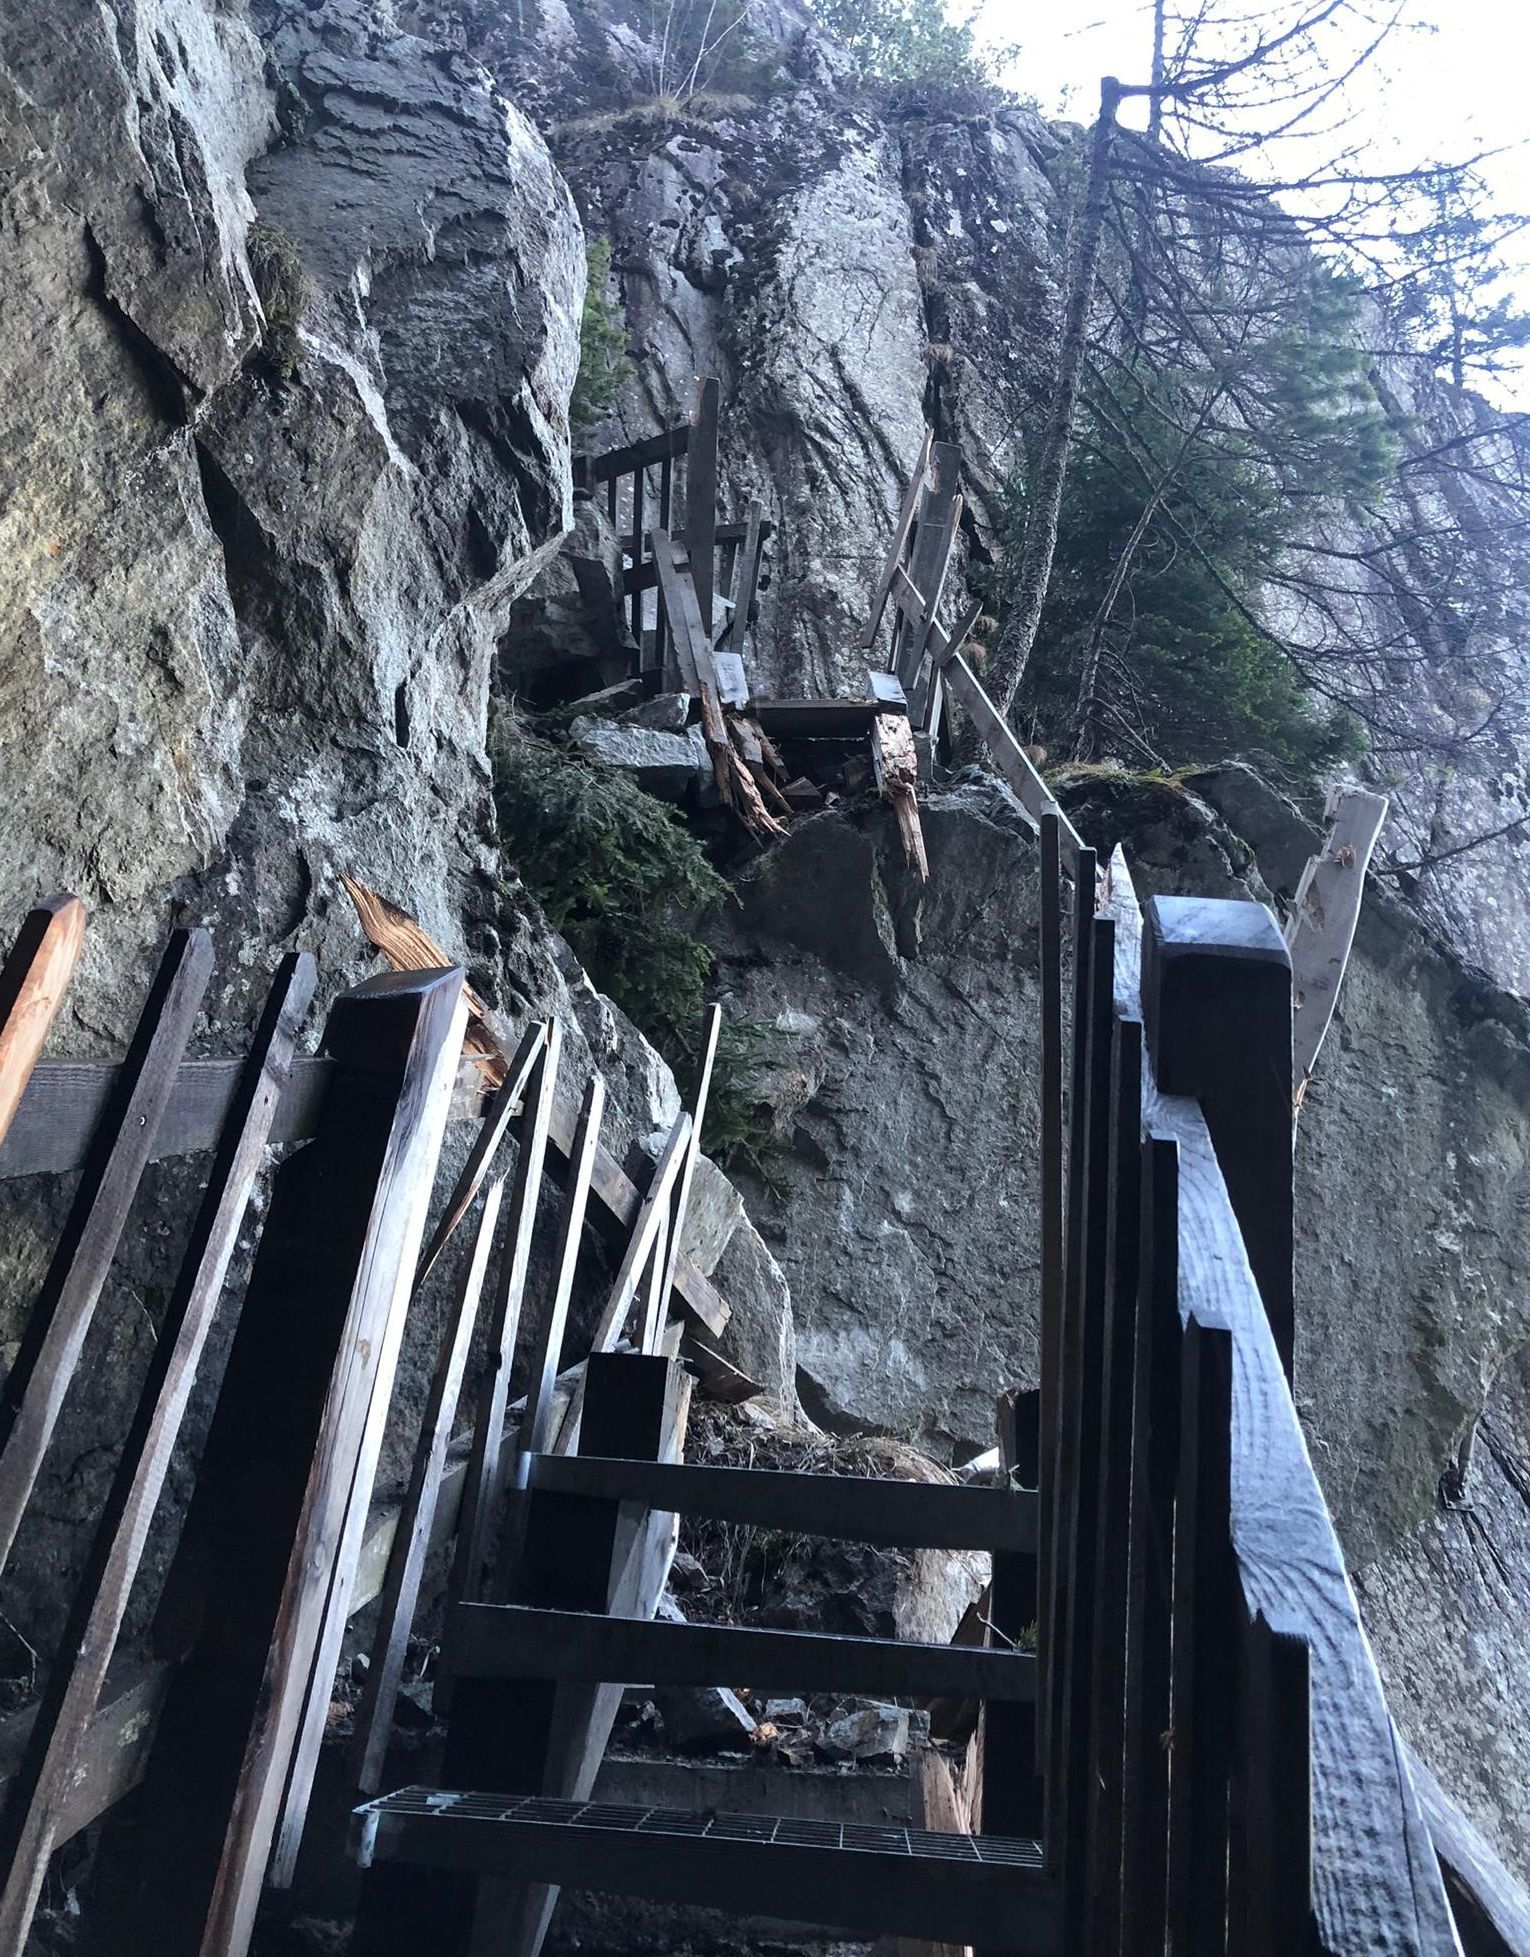 Sur le haut du sentier, les passerelles entièrement rénovées en 2019 ont été pulvérisées par un gros rocher.